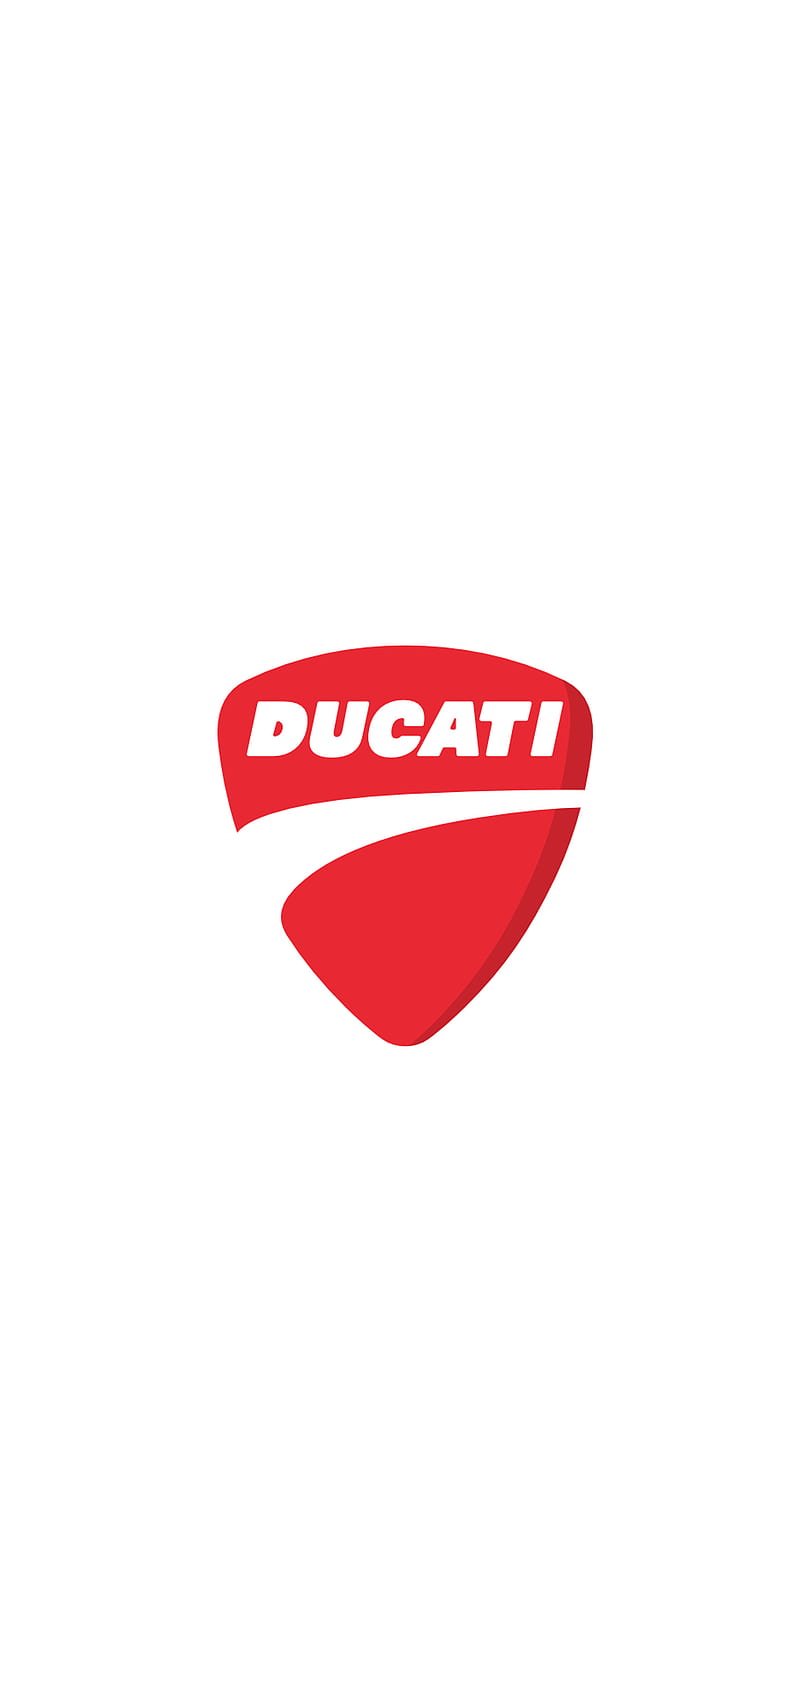 HD ducati logo wallpapers | Peakpx